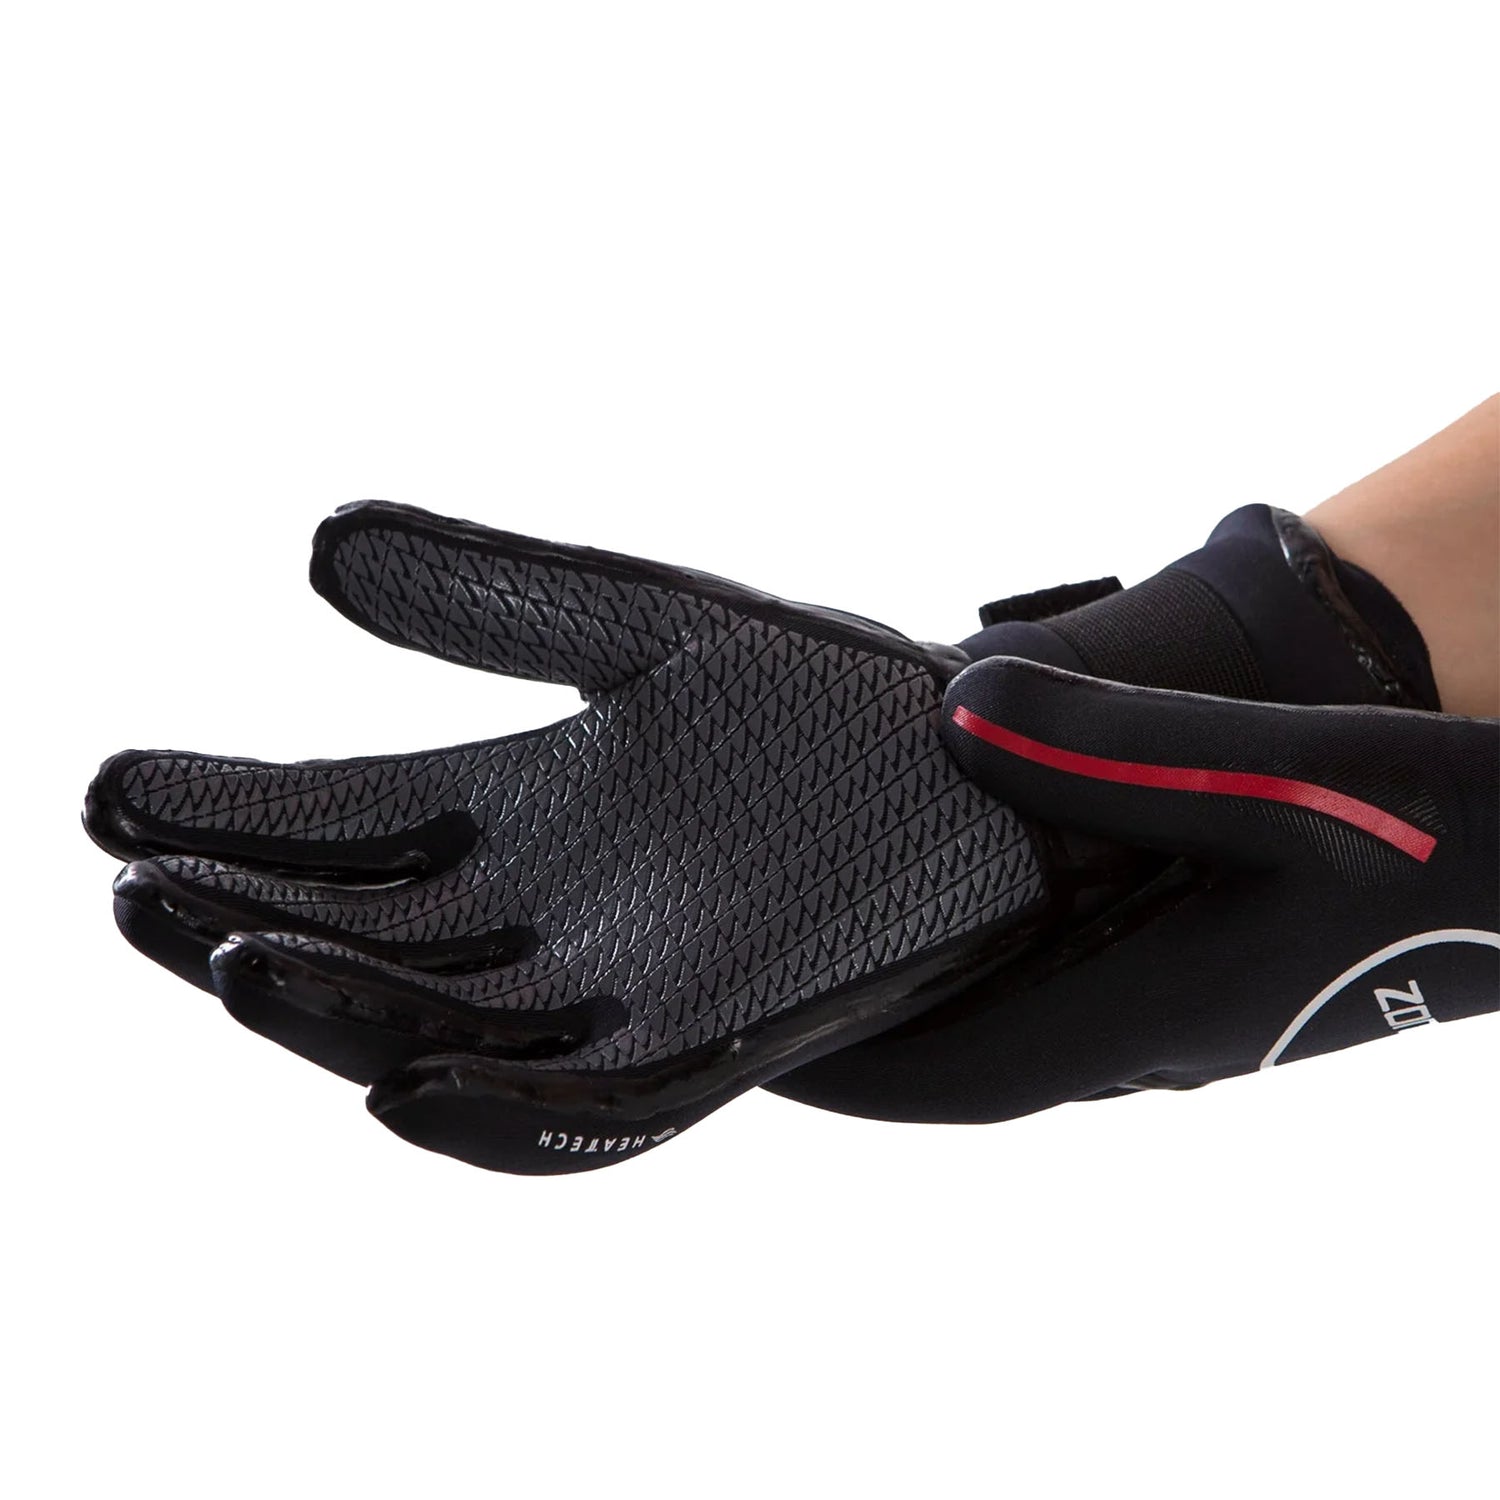 Heat-Tech Neoprene Swim Gloves